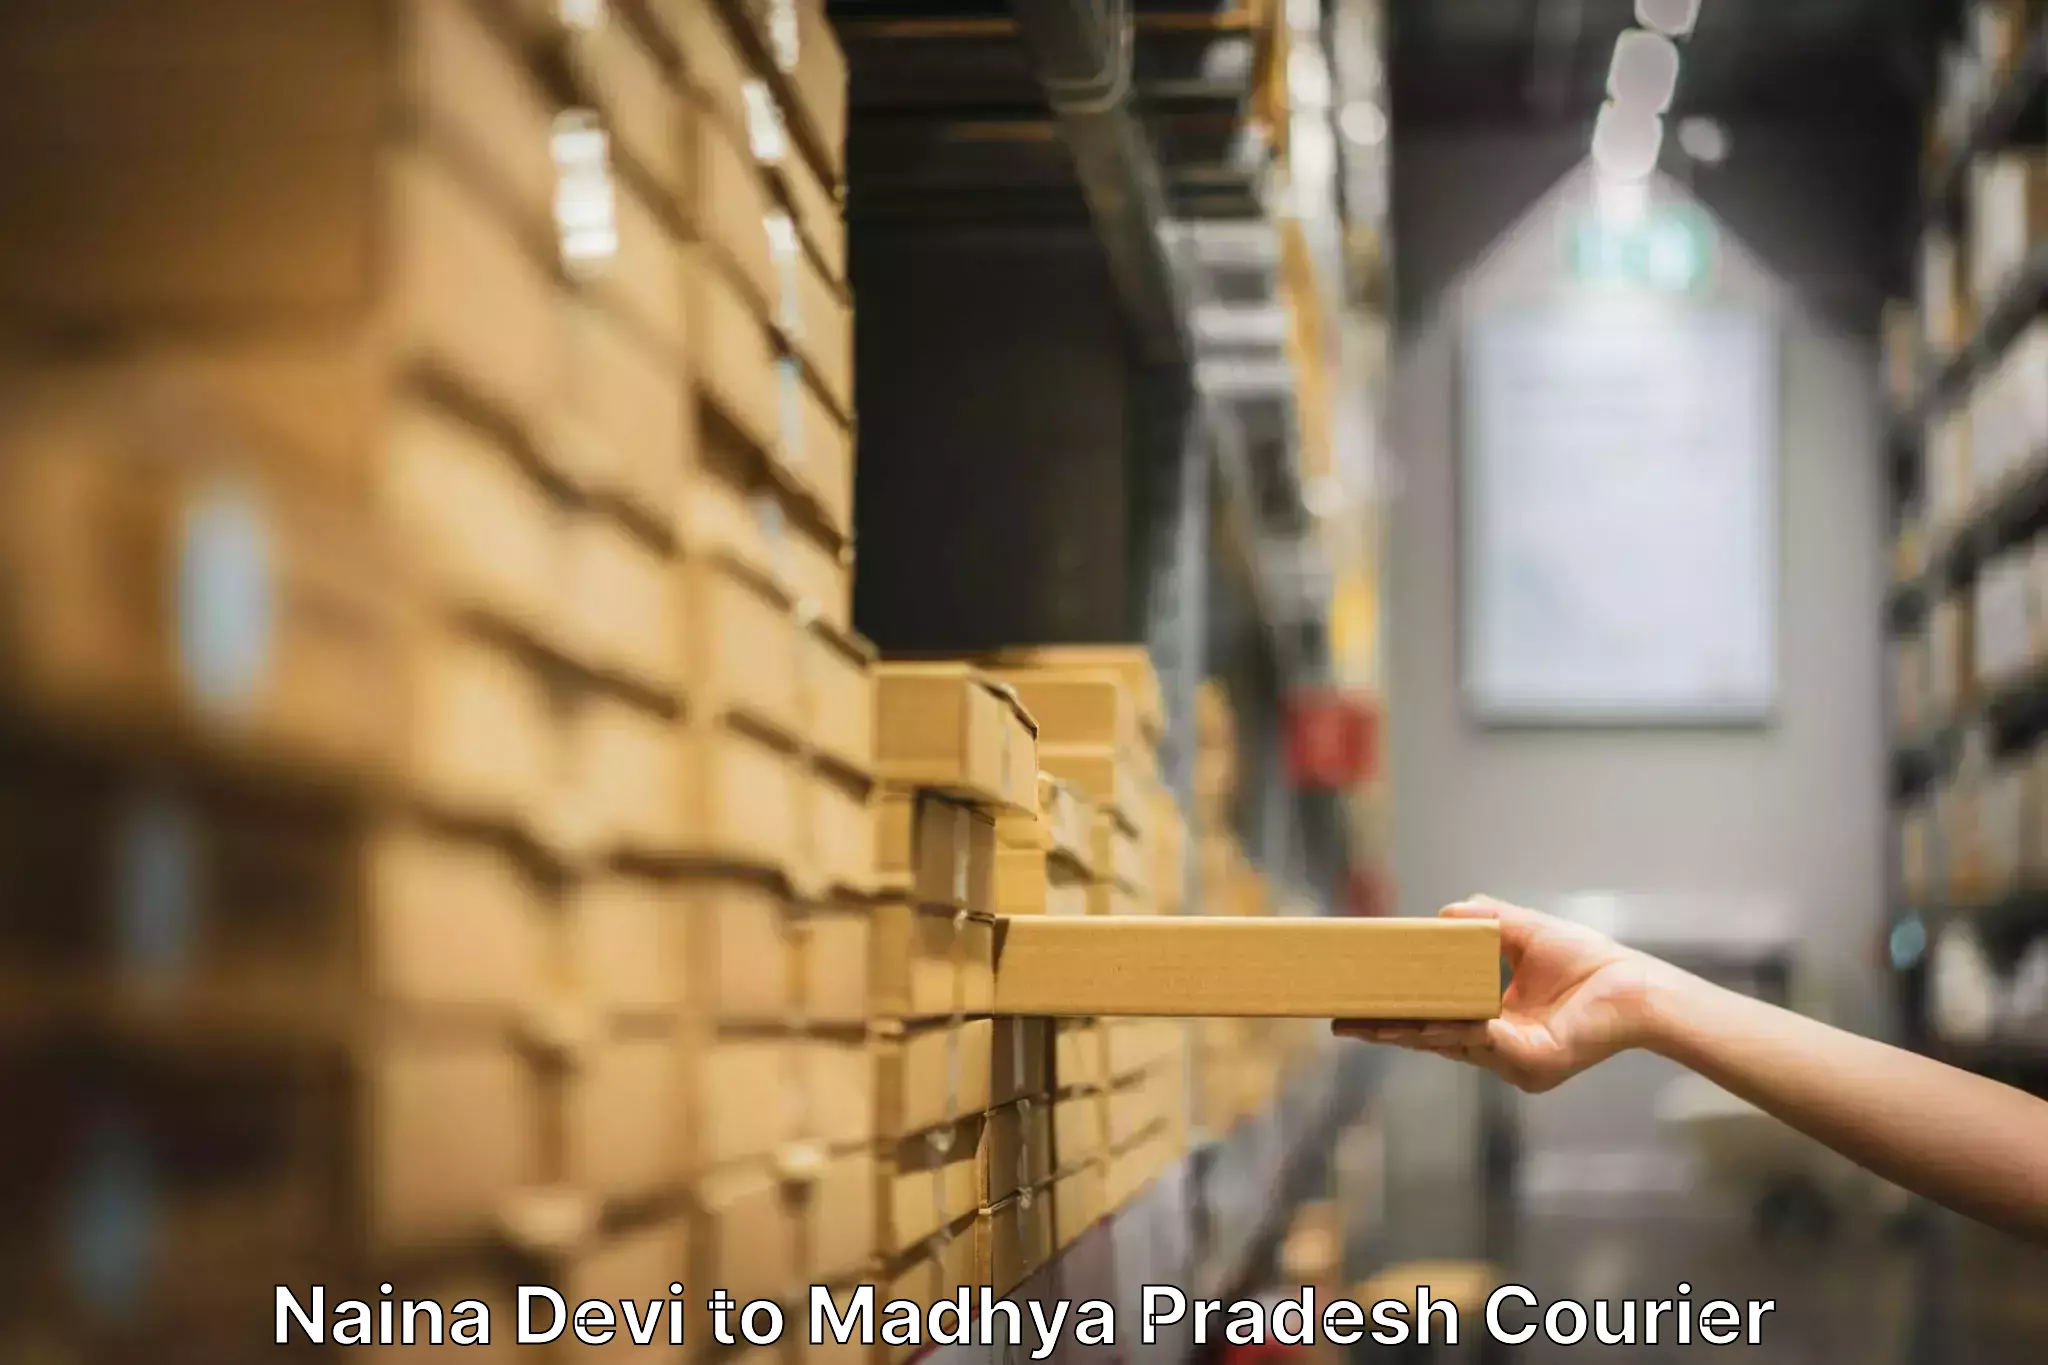 Home moving specialists Naina Devi to Madhya Pradesh